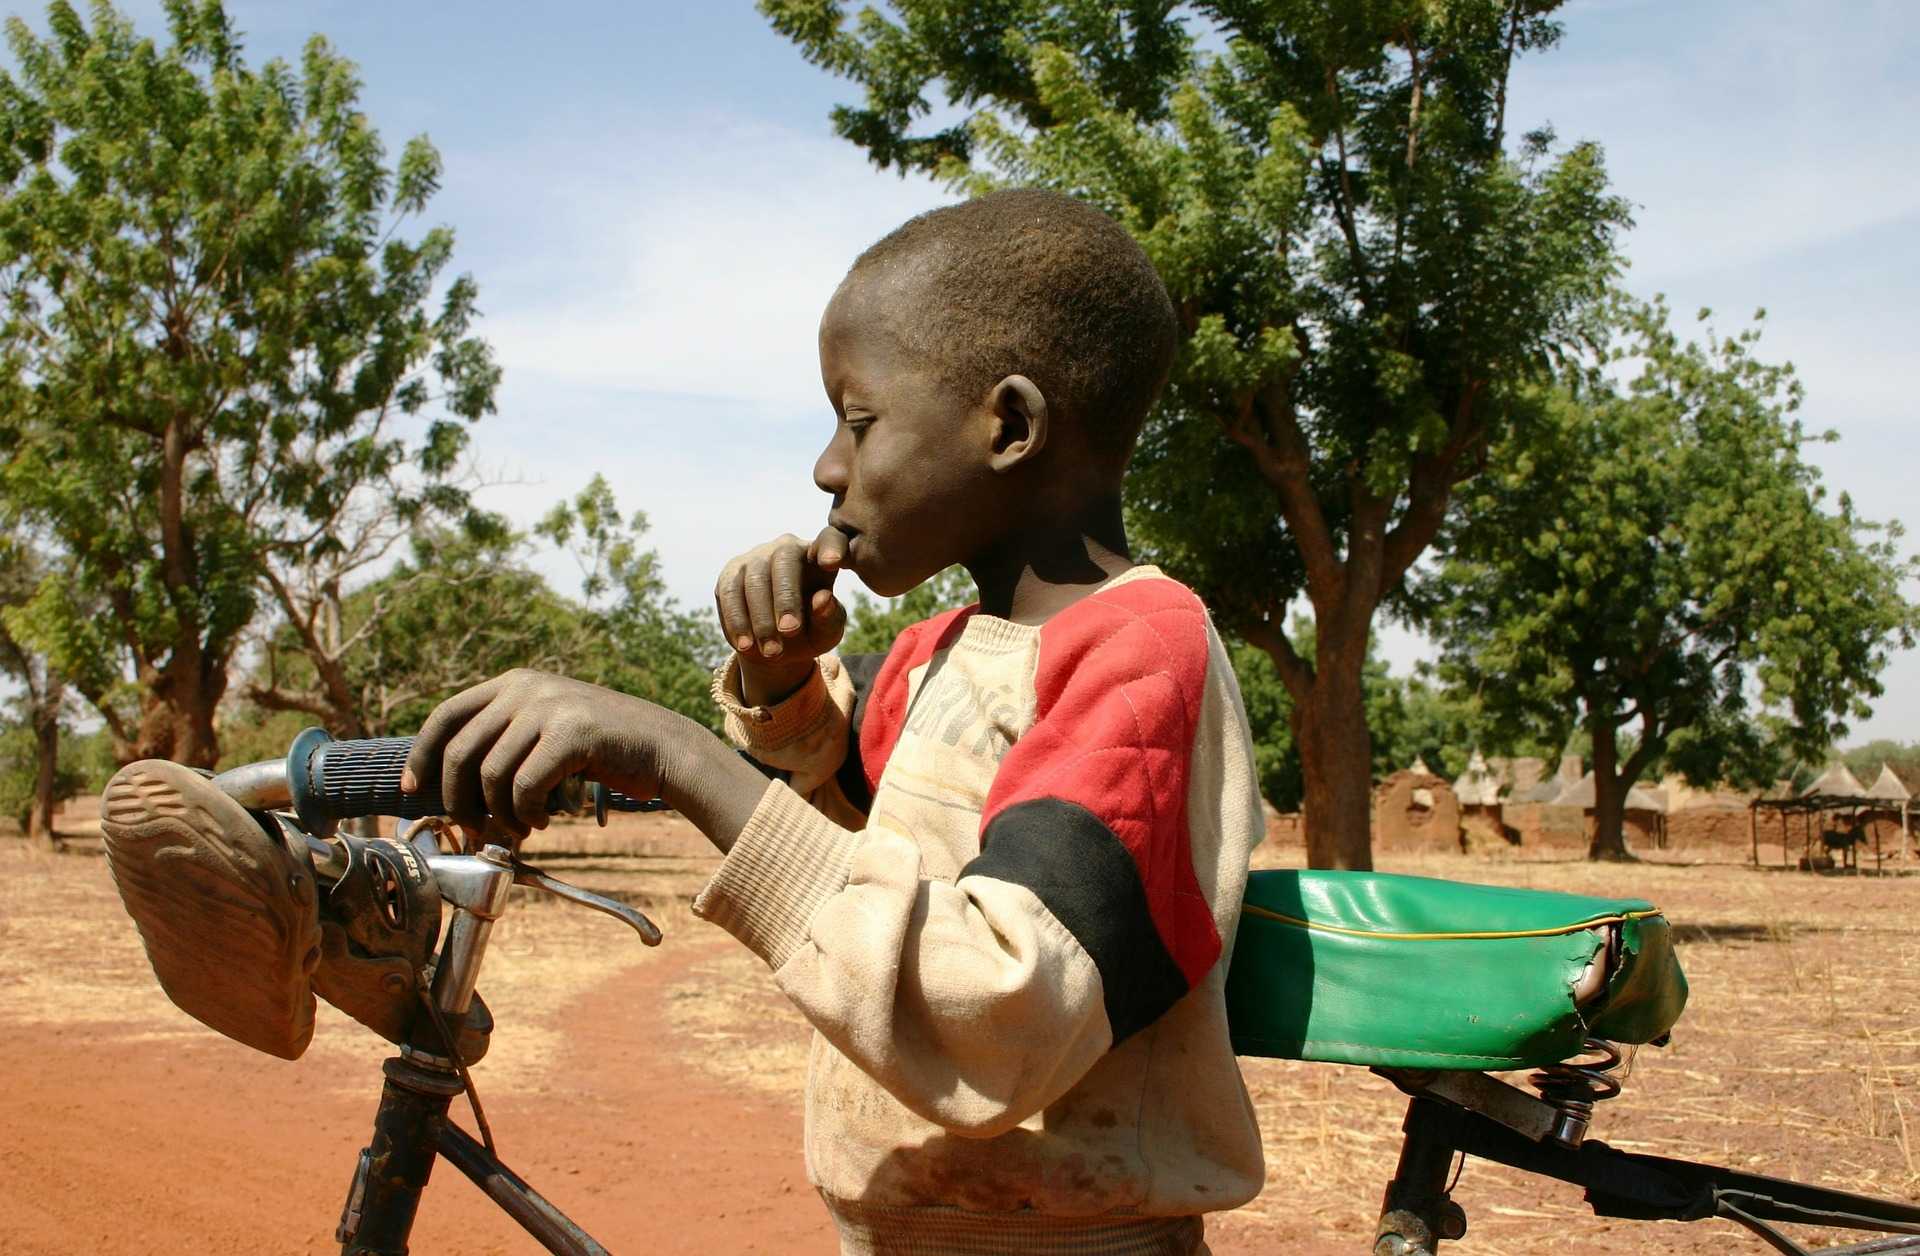 bambino con bicicletta in burkina faso